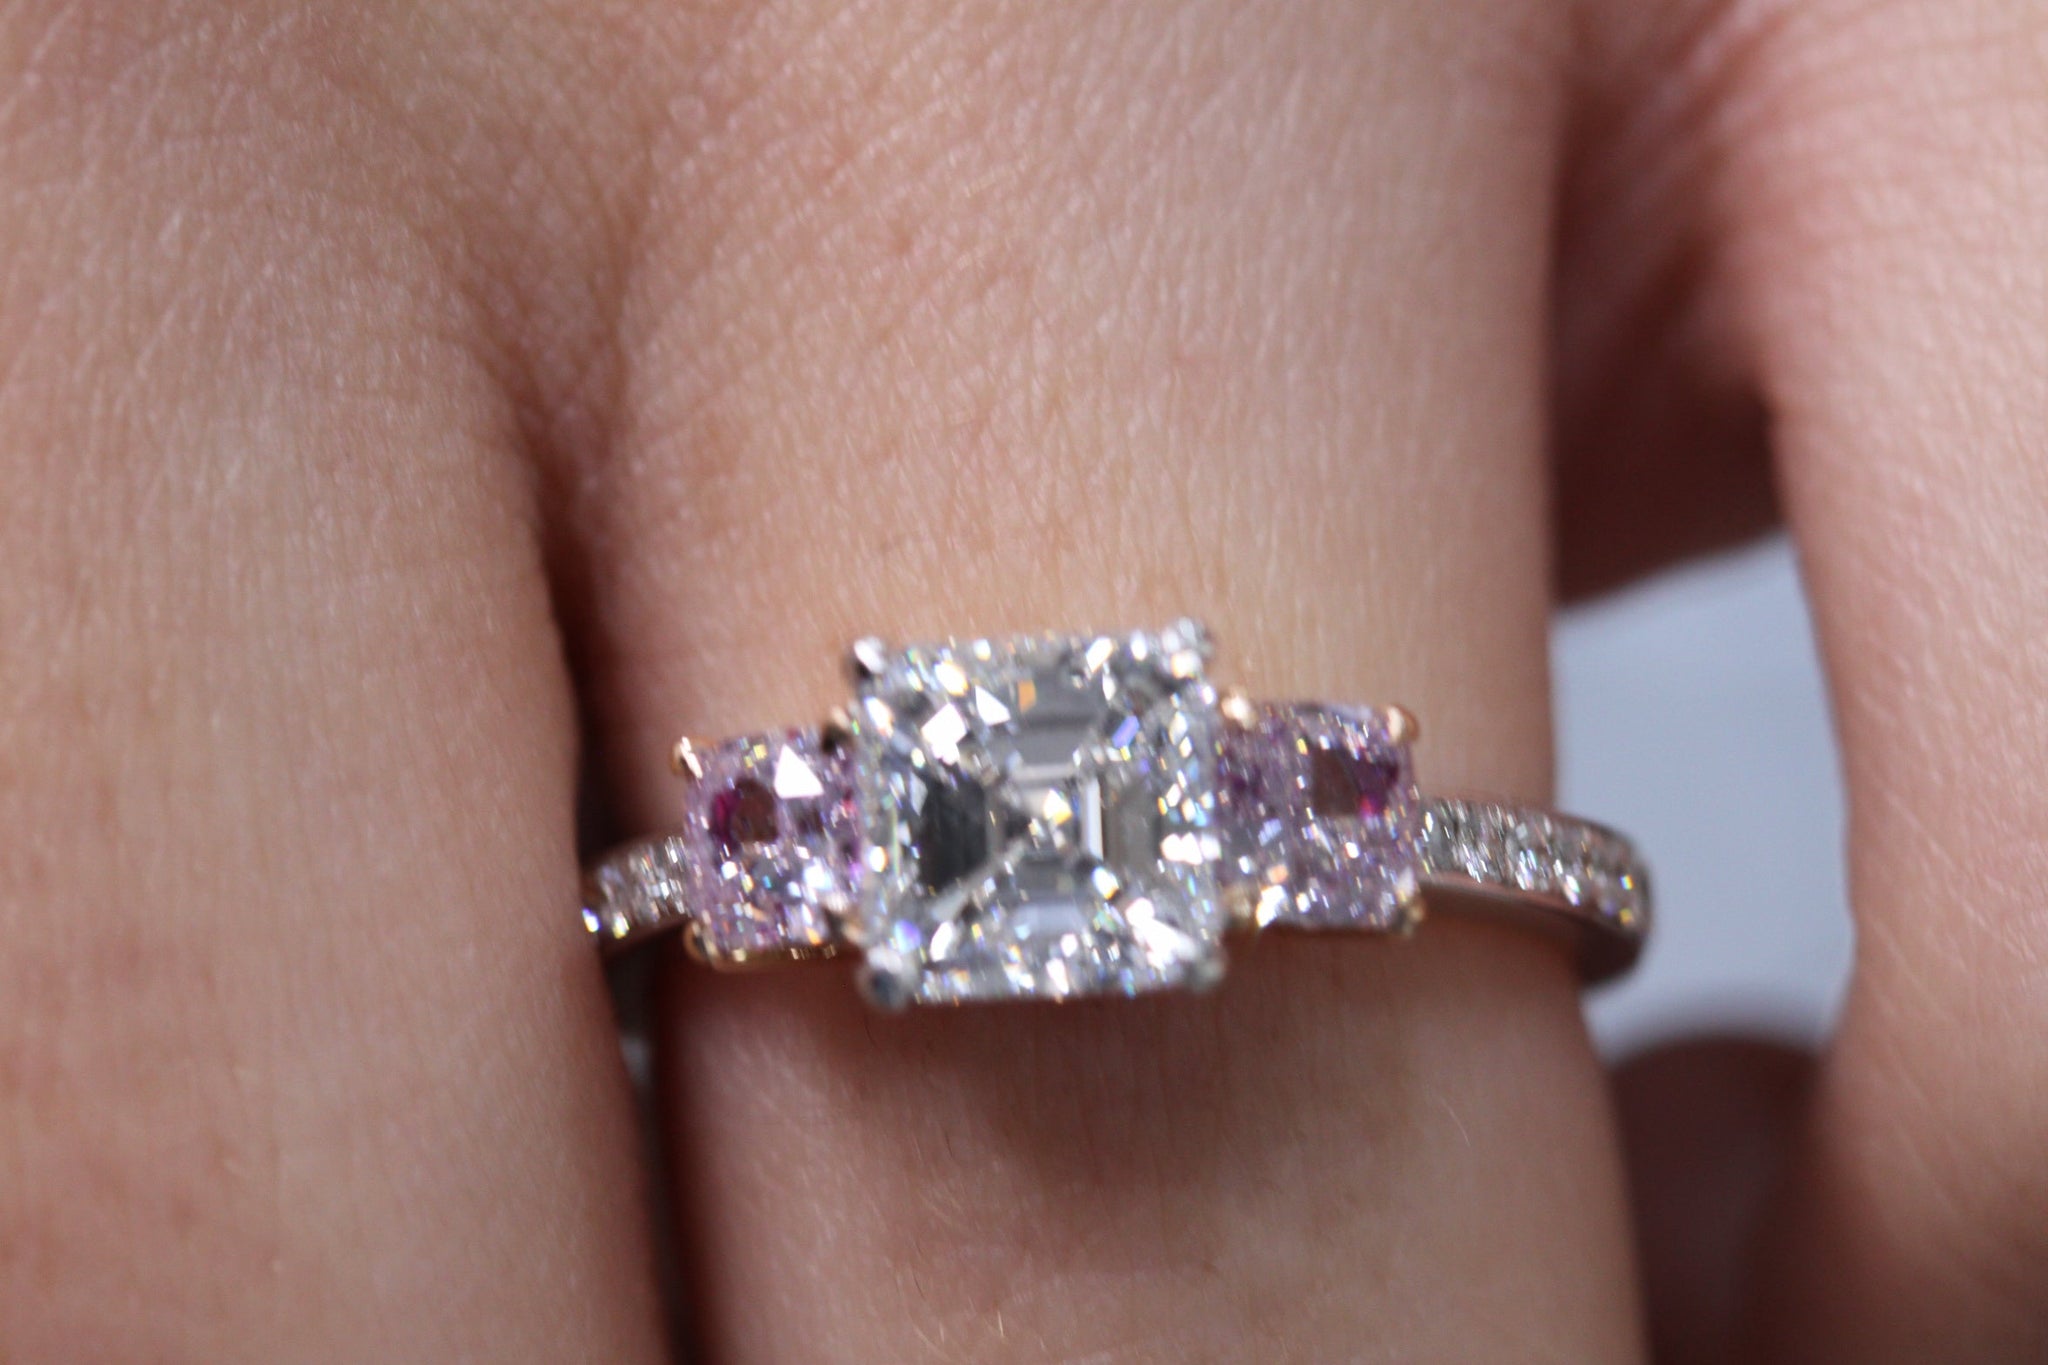 Rosa 10ct Purplish Pink Diamond Engagement Ring | Nekta New York - Ring - Mike Nekta Nyc - Nekta New York